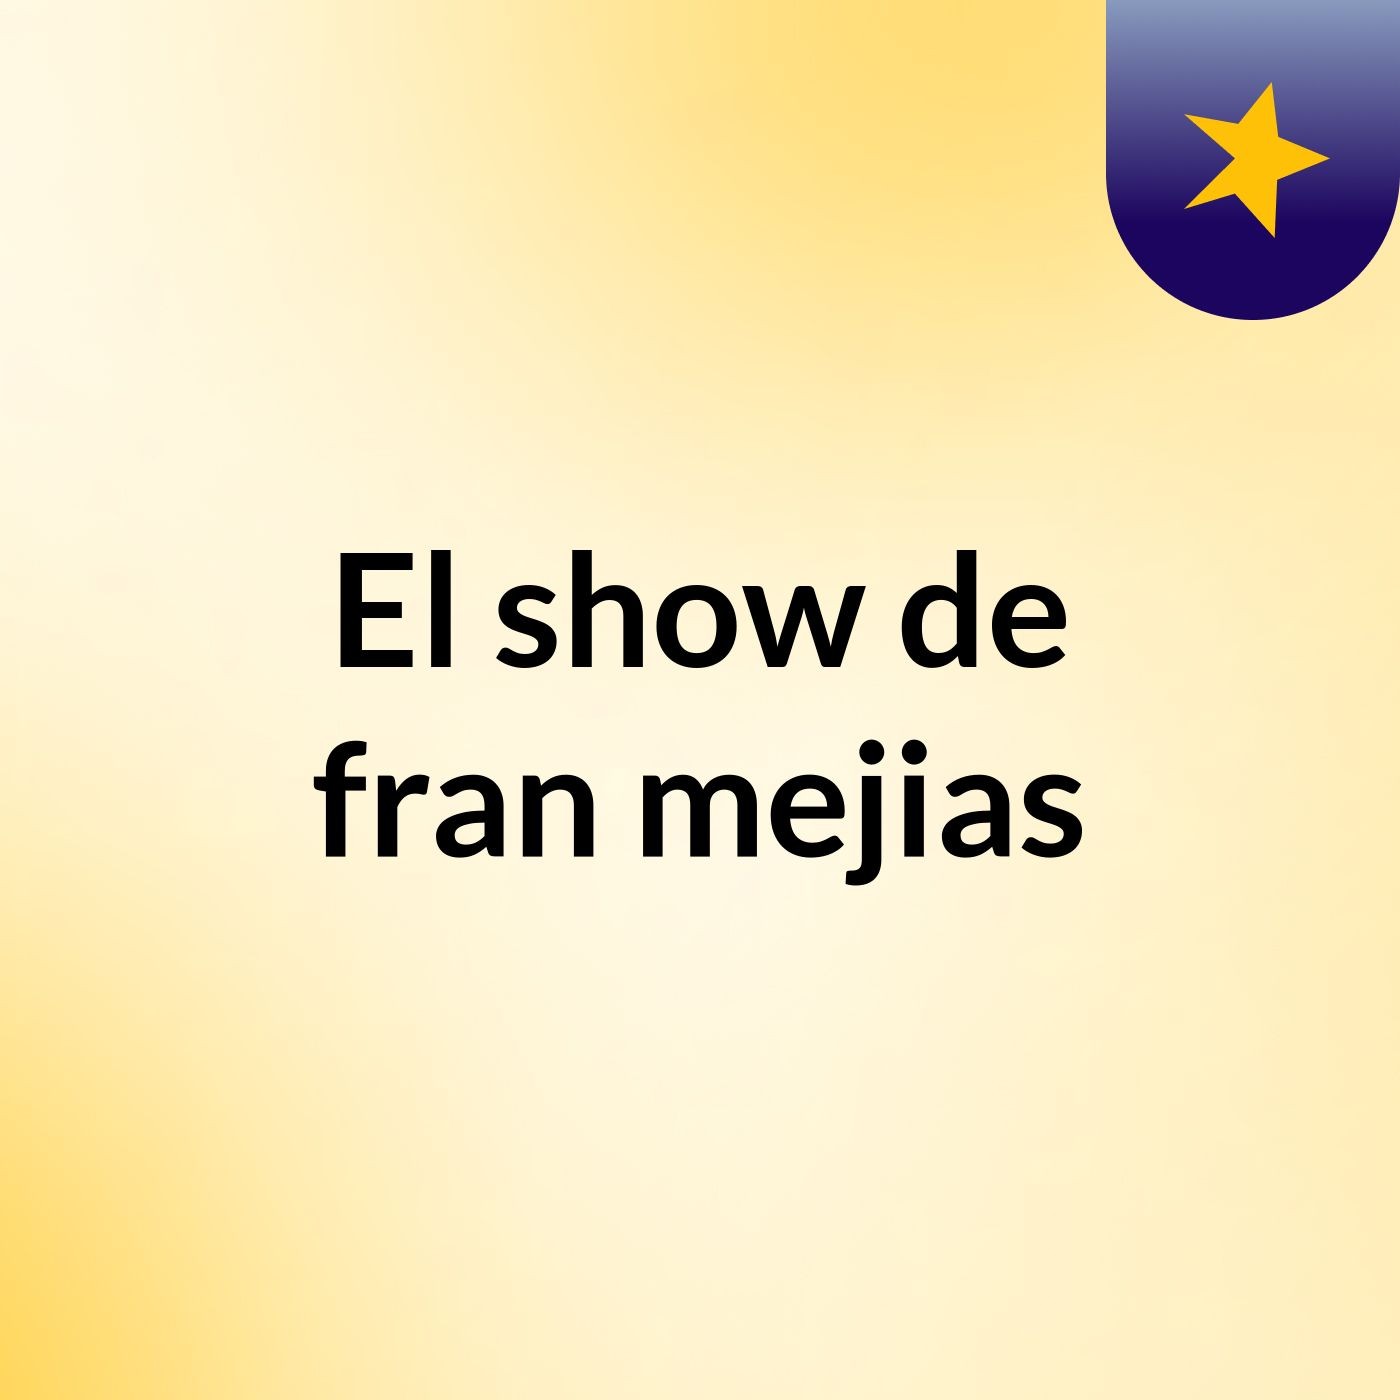 El show de fran mejias